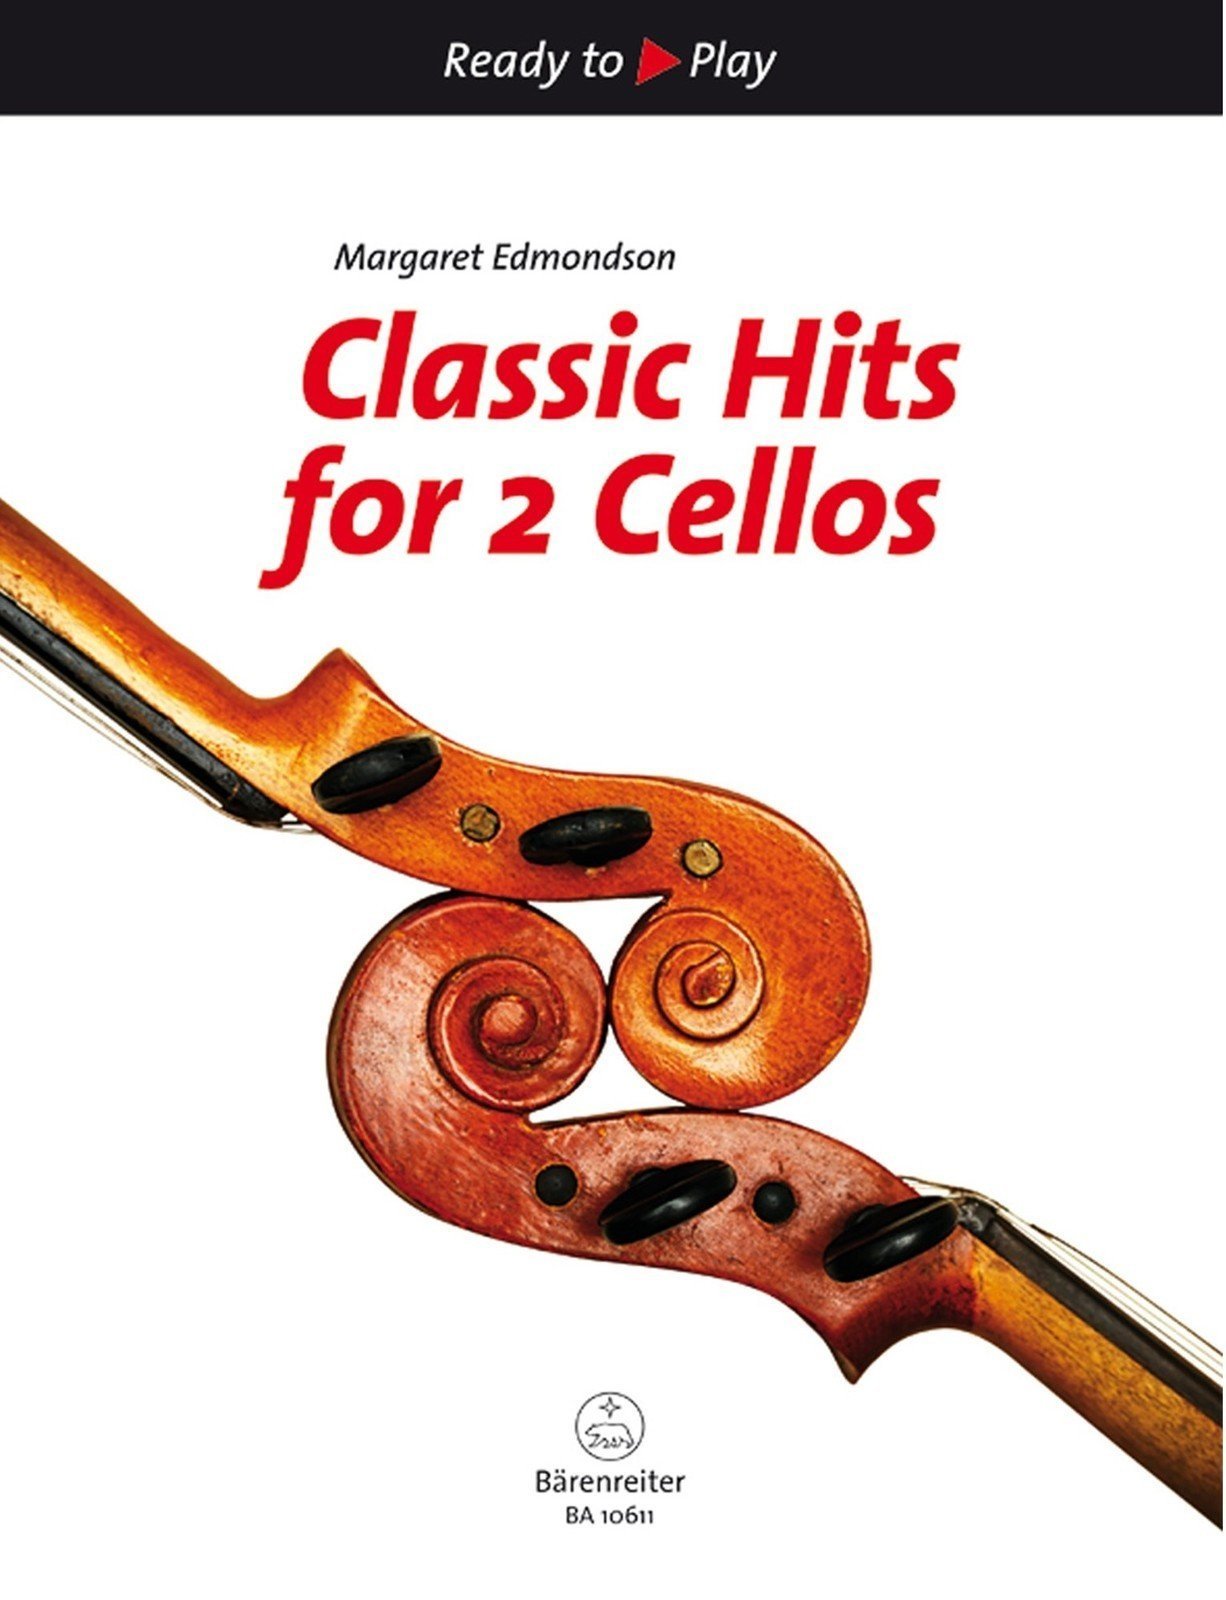 Nuotit jousisoittimille Margaret Edmondson Classic Hits for 2 Cellos Nuottikirja